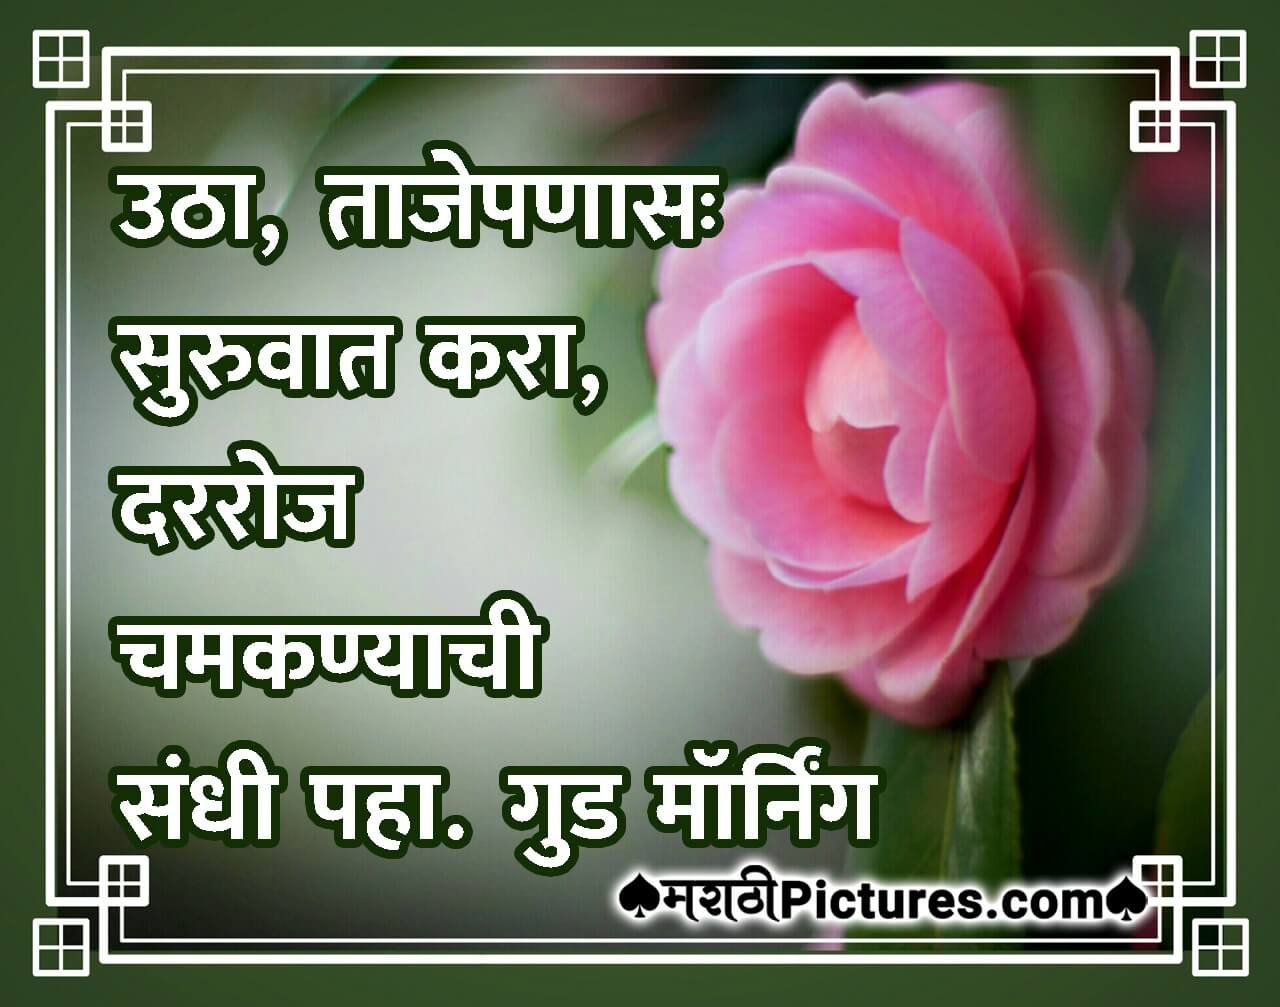 Good Morning Marathi Quote